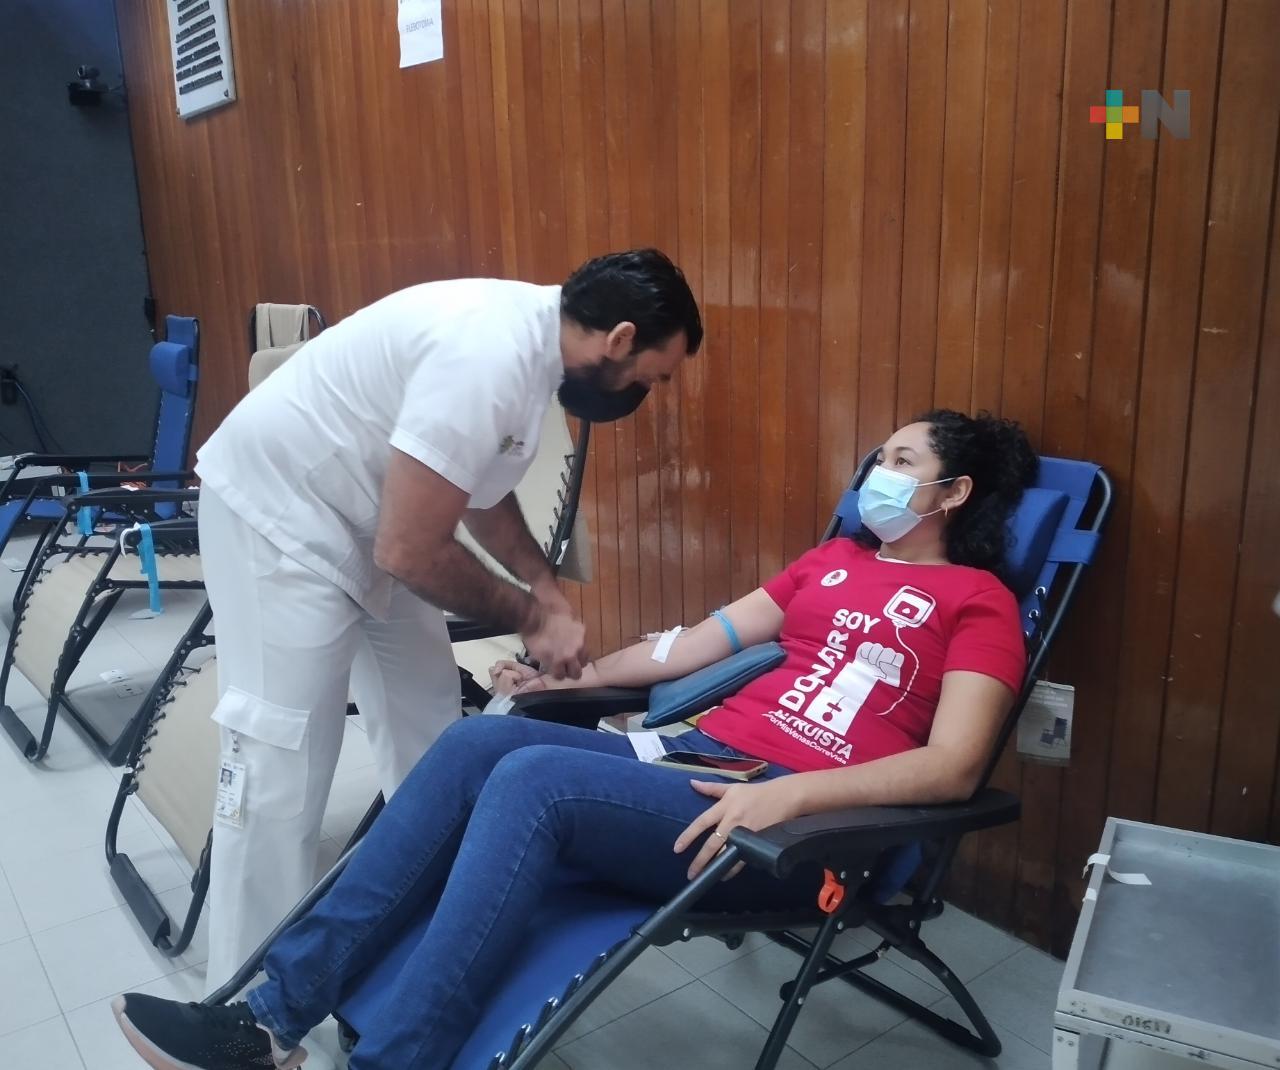 Fomentan donación de sangre altruista en comunidad de la UV región Veracruz